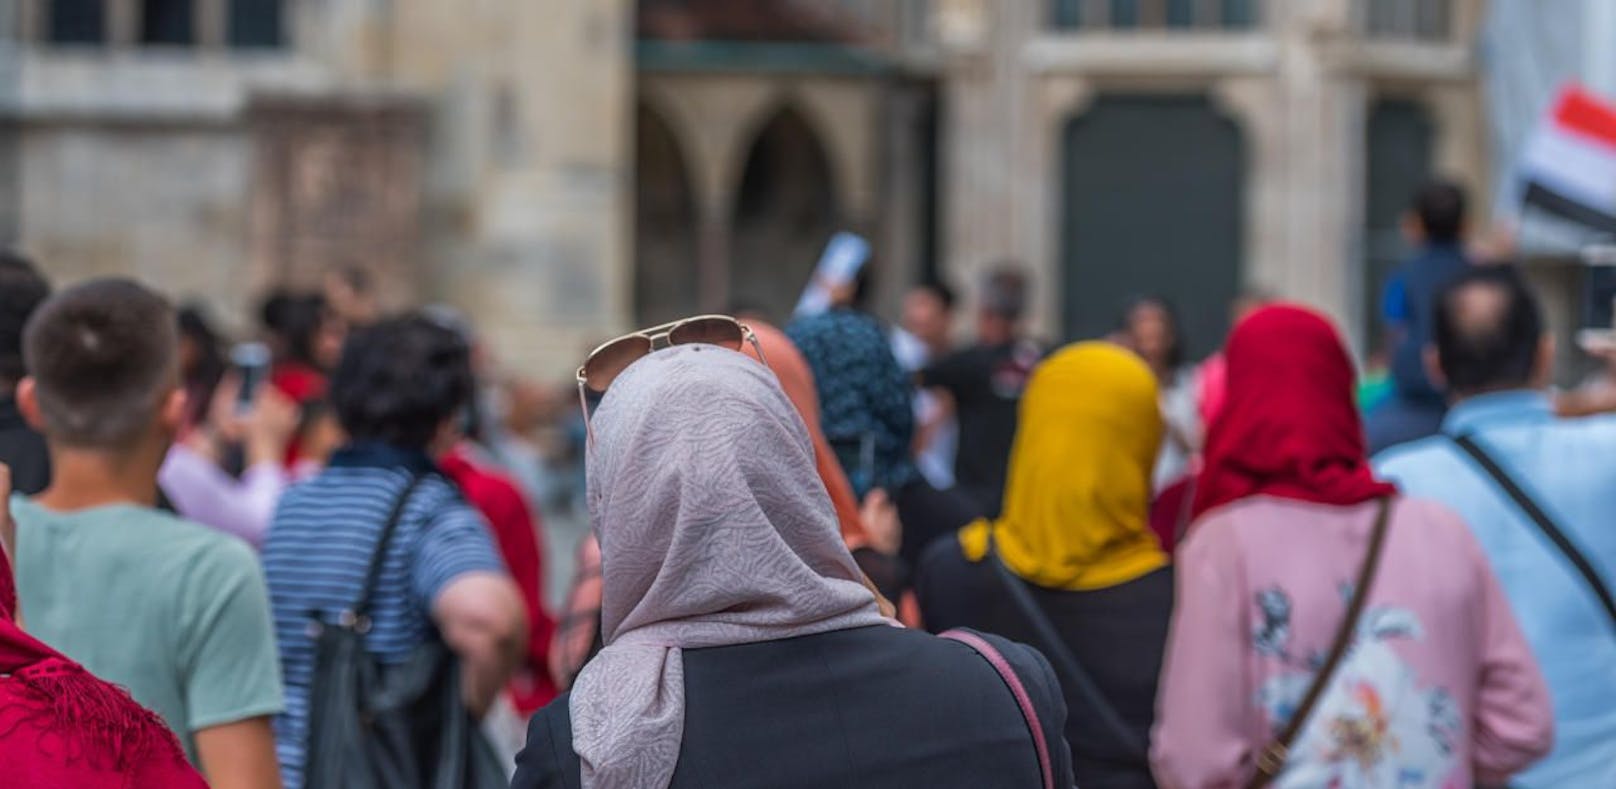 Eine neue Studie der Forschungsinstitute think.difference und SORA unter muslimischen Jugendlichen zeigt, dass die Hälfte der Afghanen die Regeln des Islam über die Gesetze Österreichs stellen.